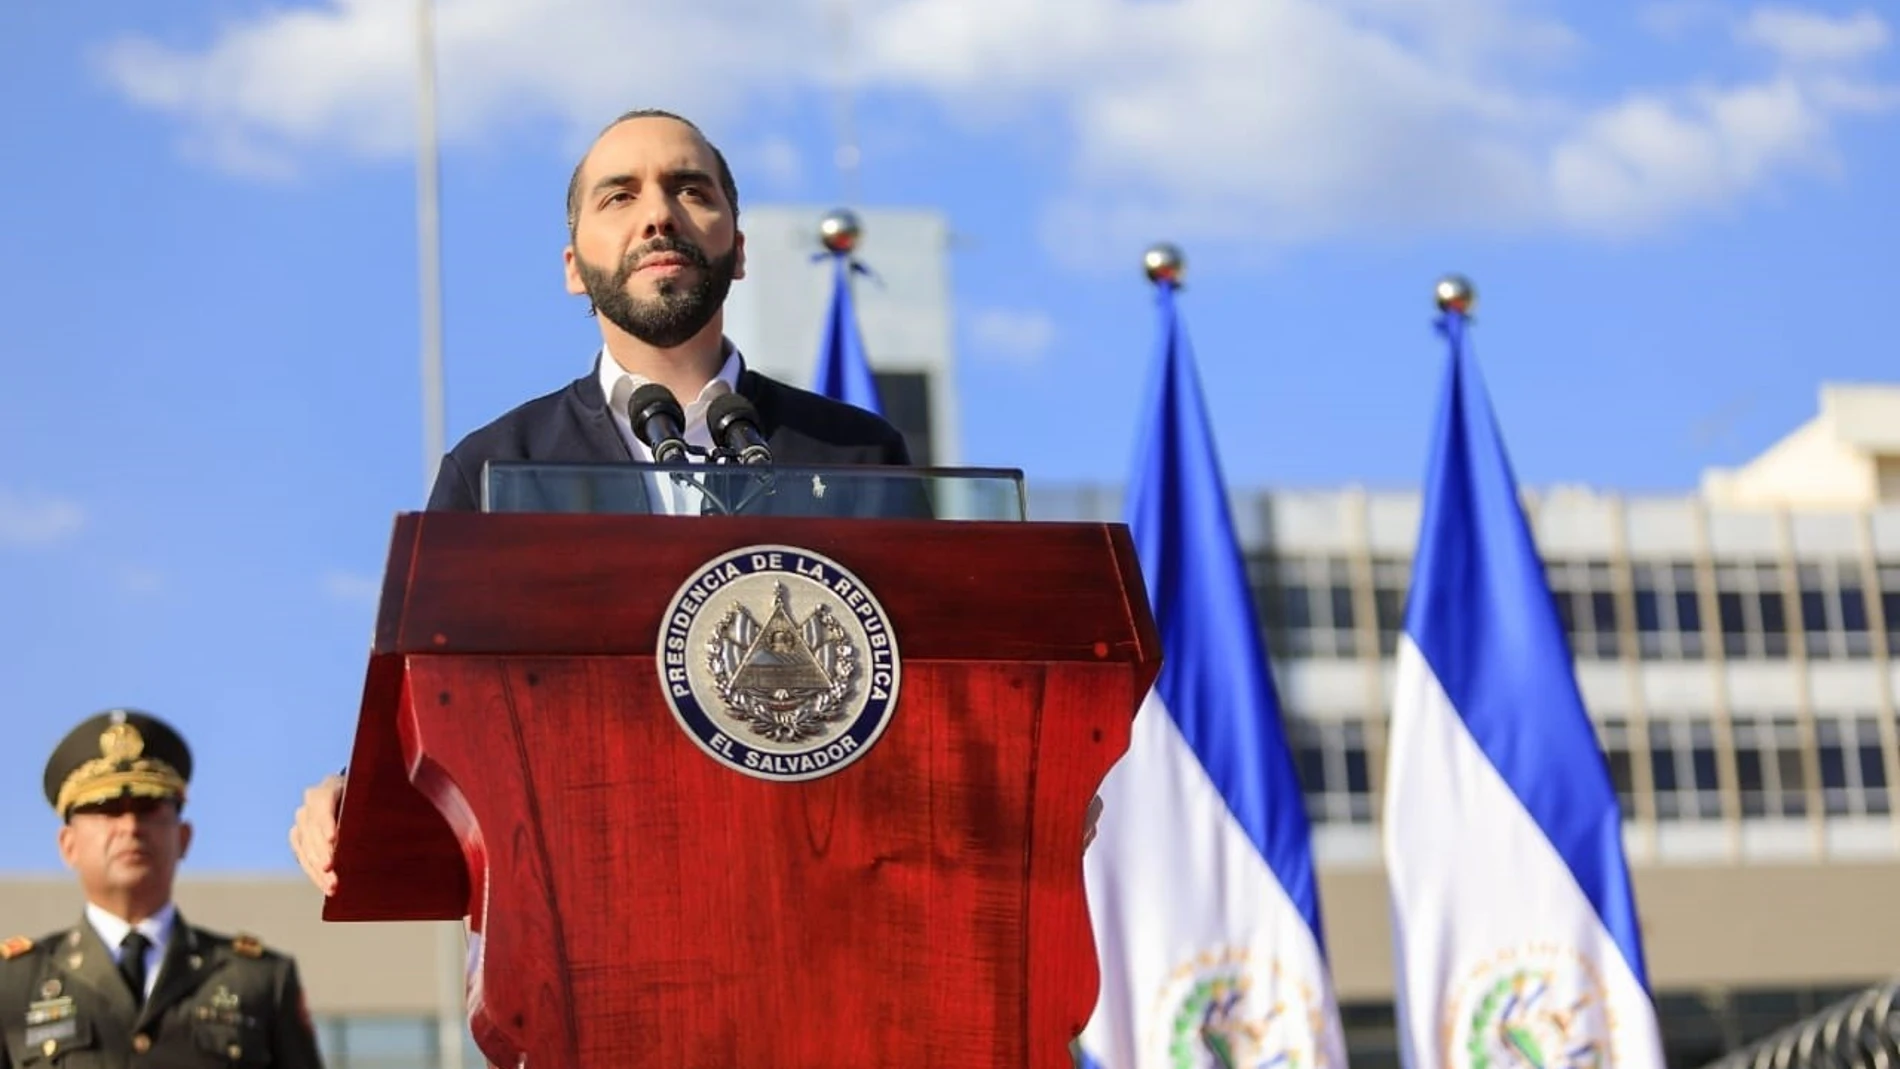 El Salvador.-El Constitucional de El Salvador ordena a Bukele abstenerse utilizar al Ejército y presionar al Legislativo